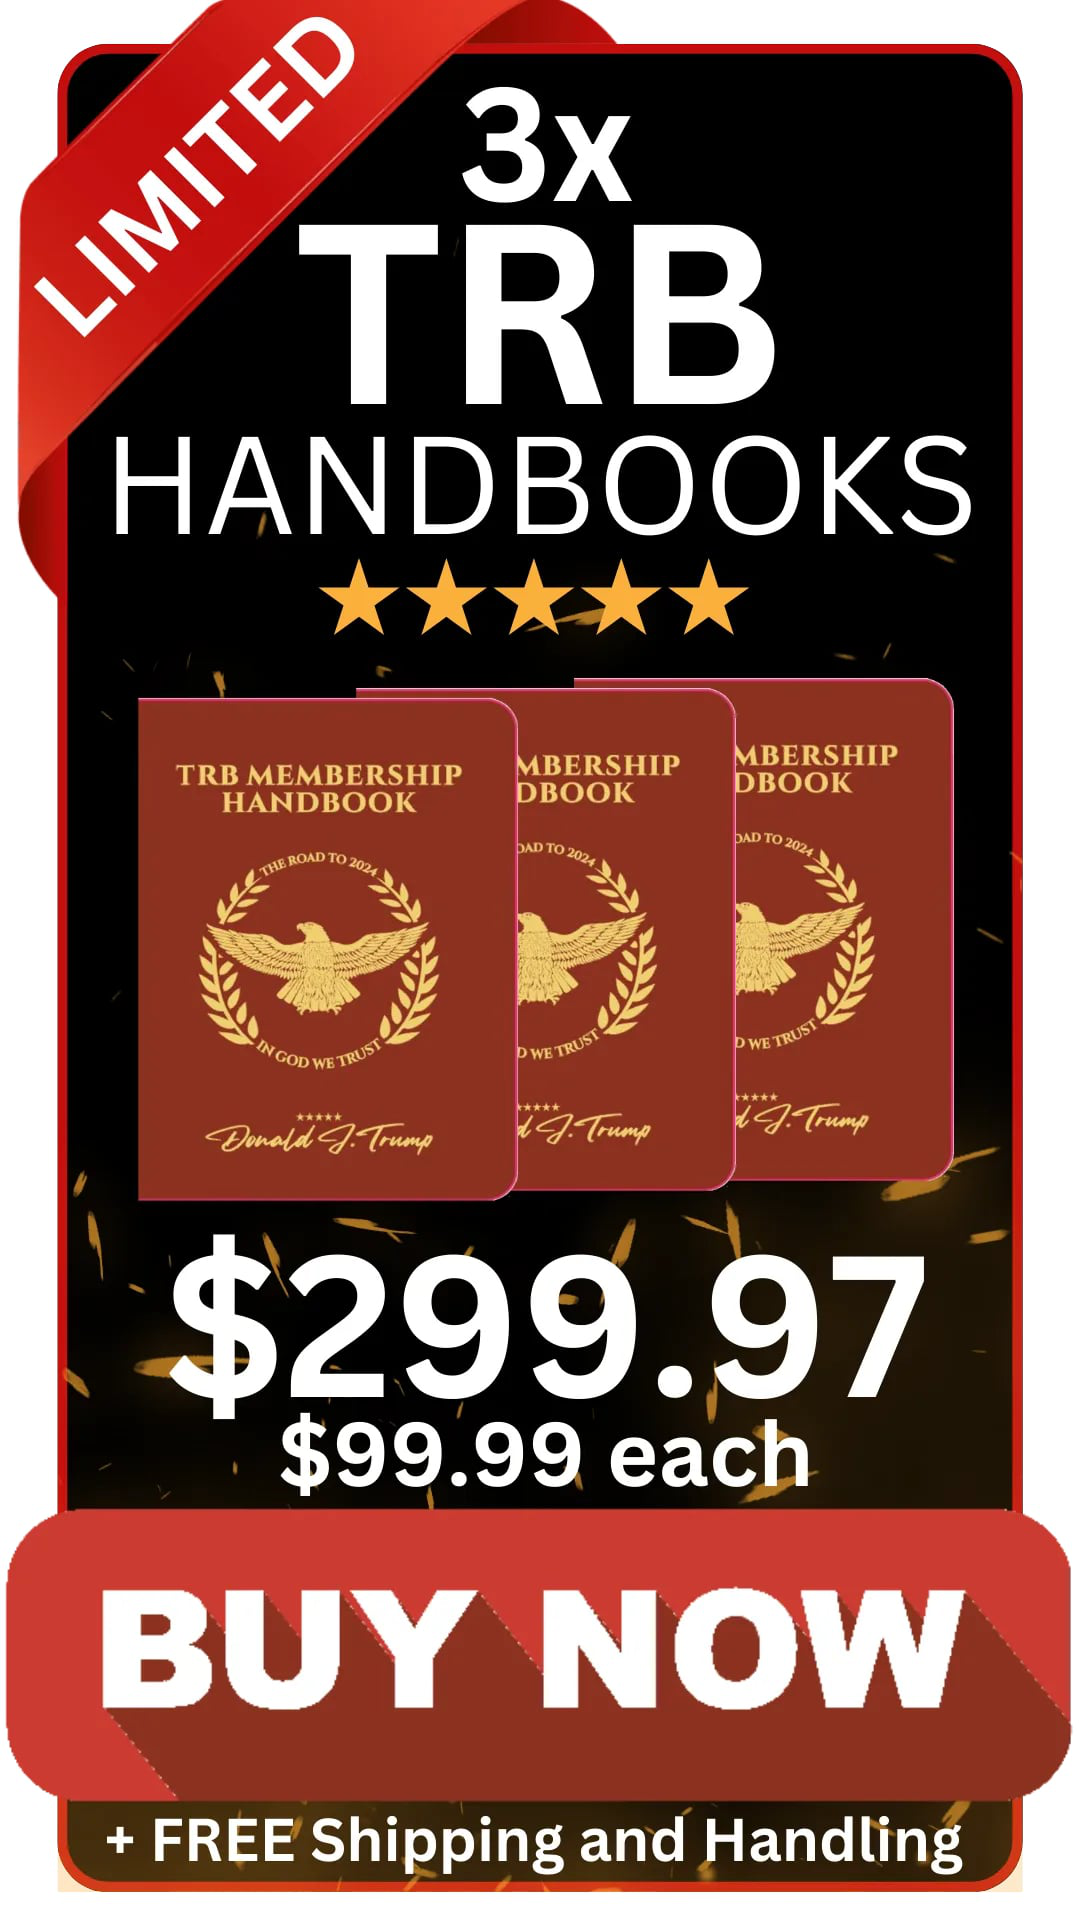 3xtrb-handbooks-trump